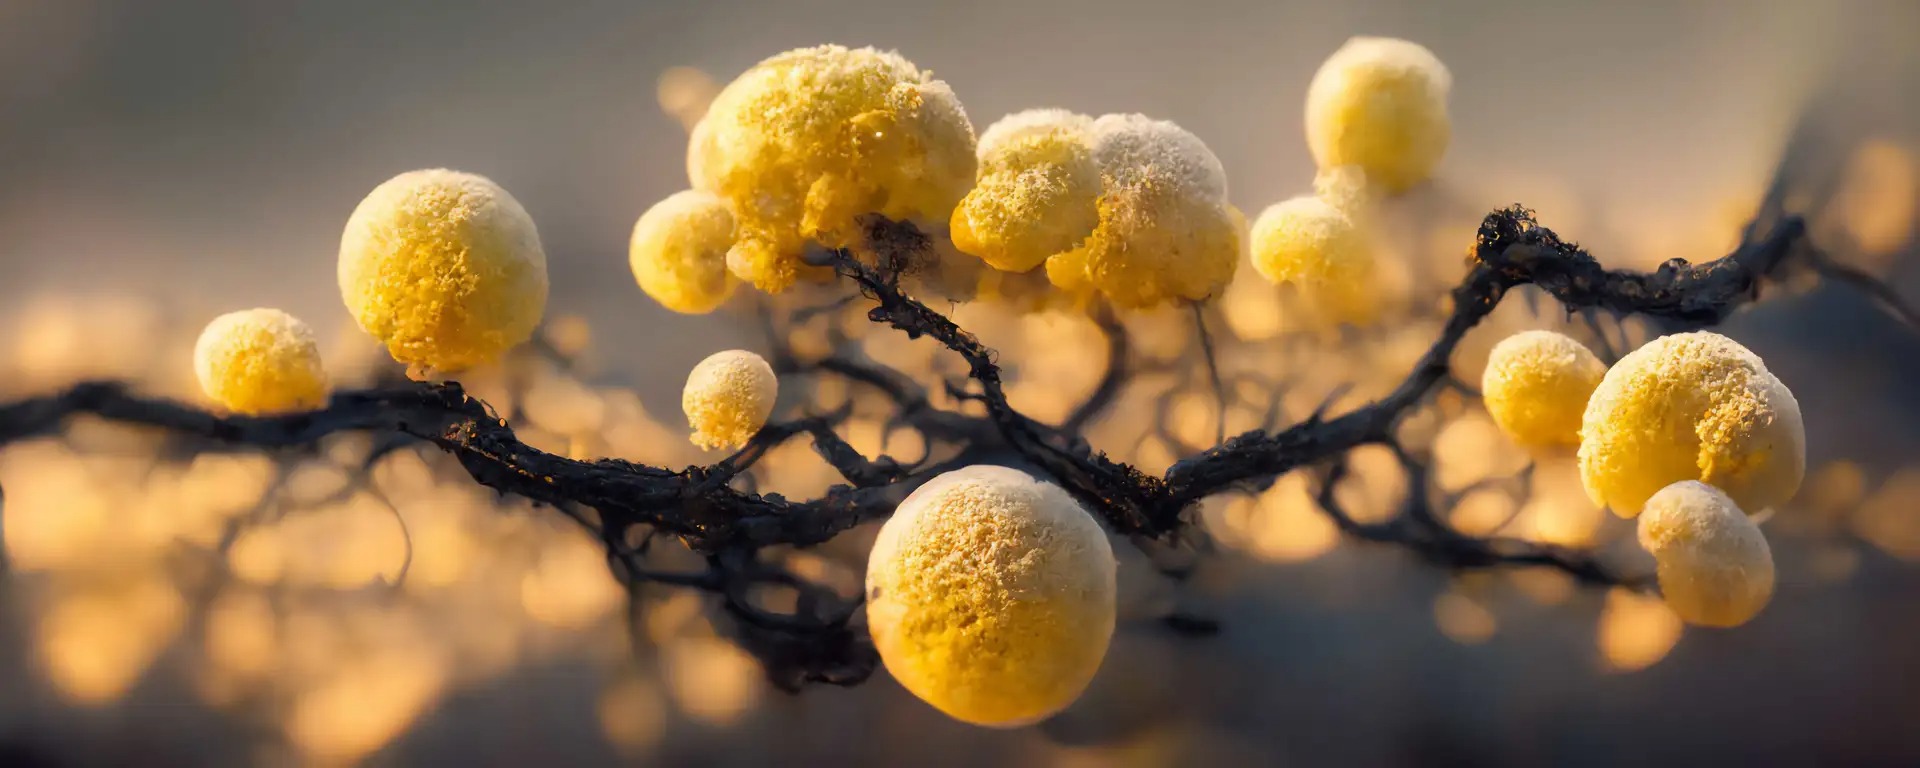 candida auris - Tödlicher Pilz breitet sich in den USA rasant aus